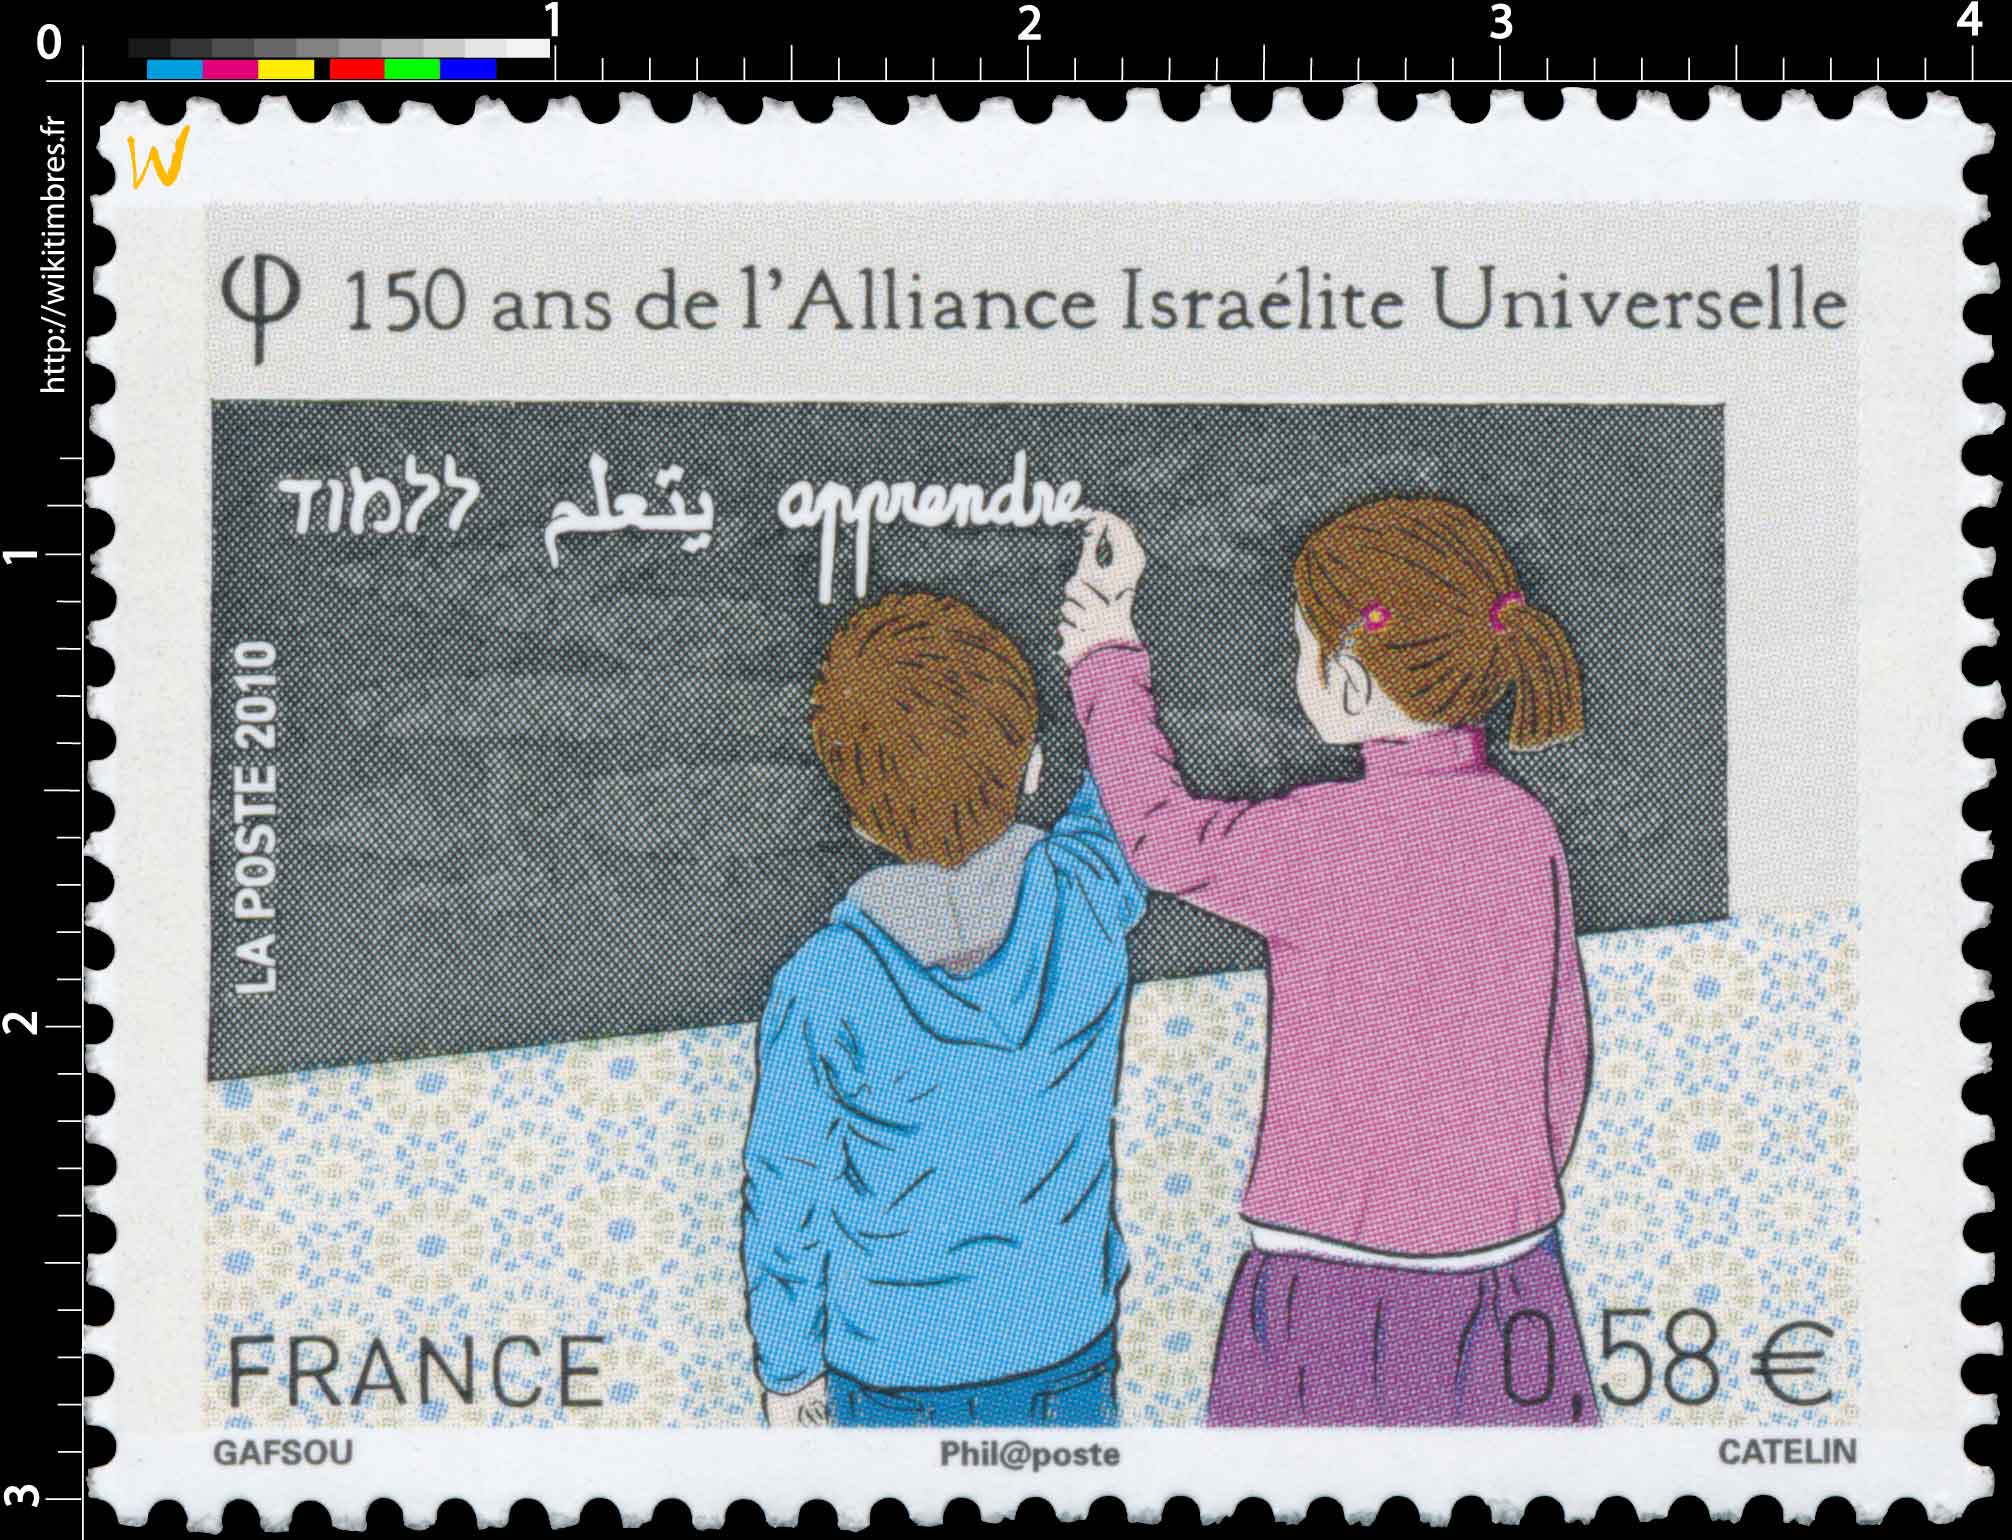 2010 150 ans de l’Alliance Israélite Universelle